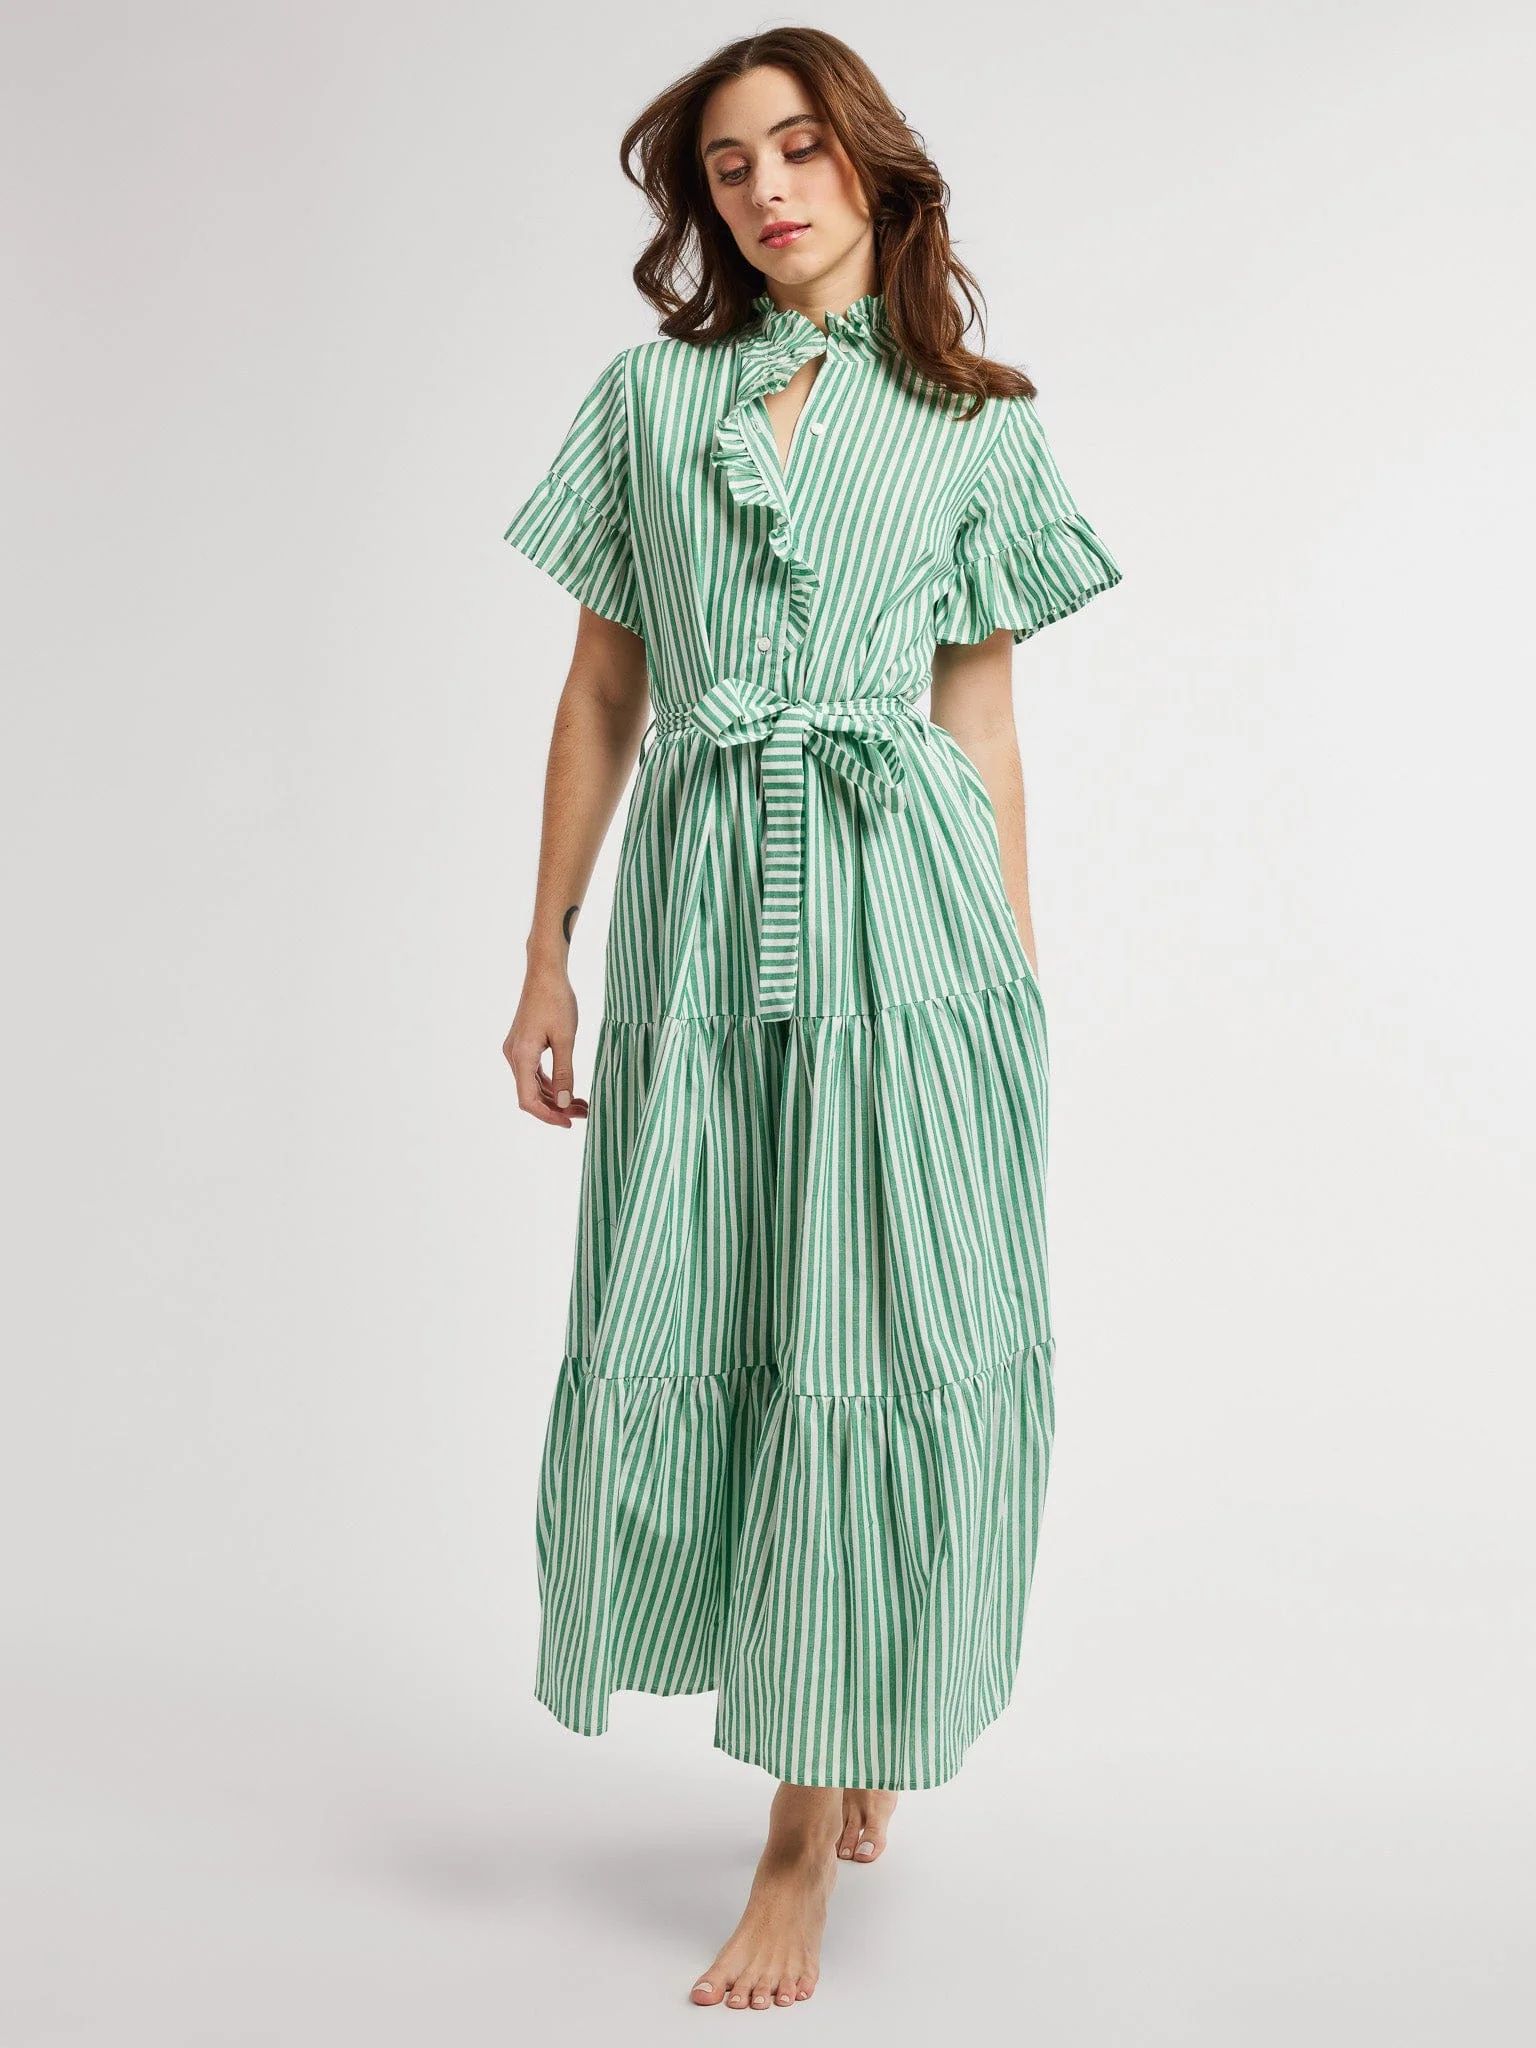 Victoria Dress in Kelly Stripe | Mille